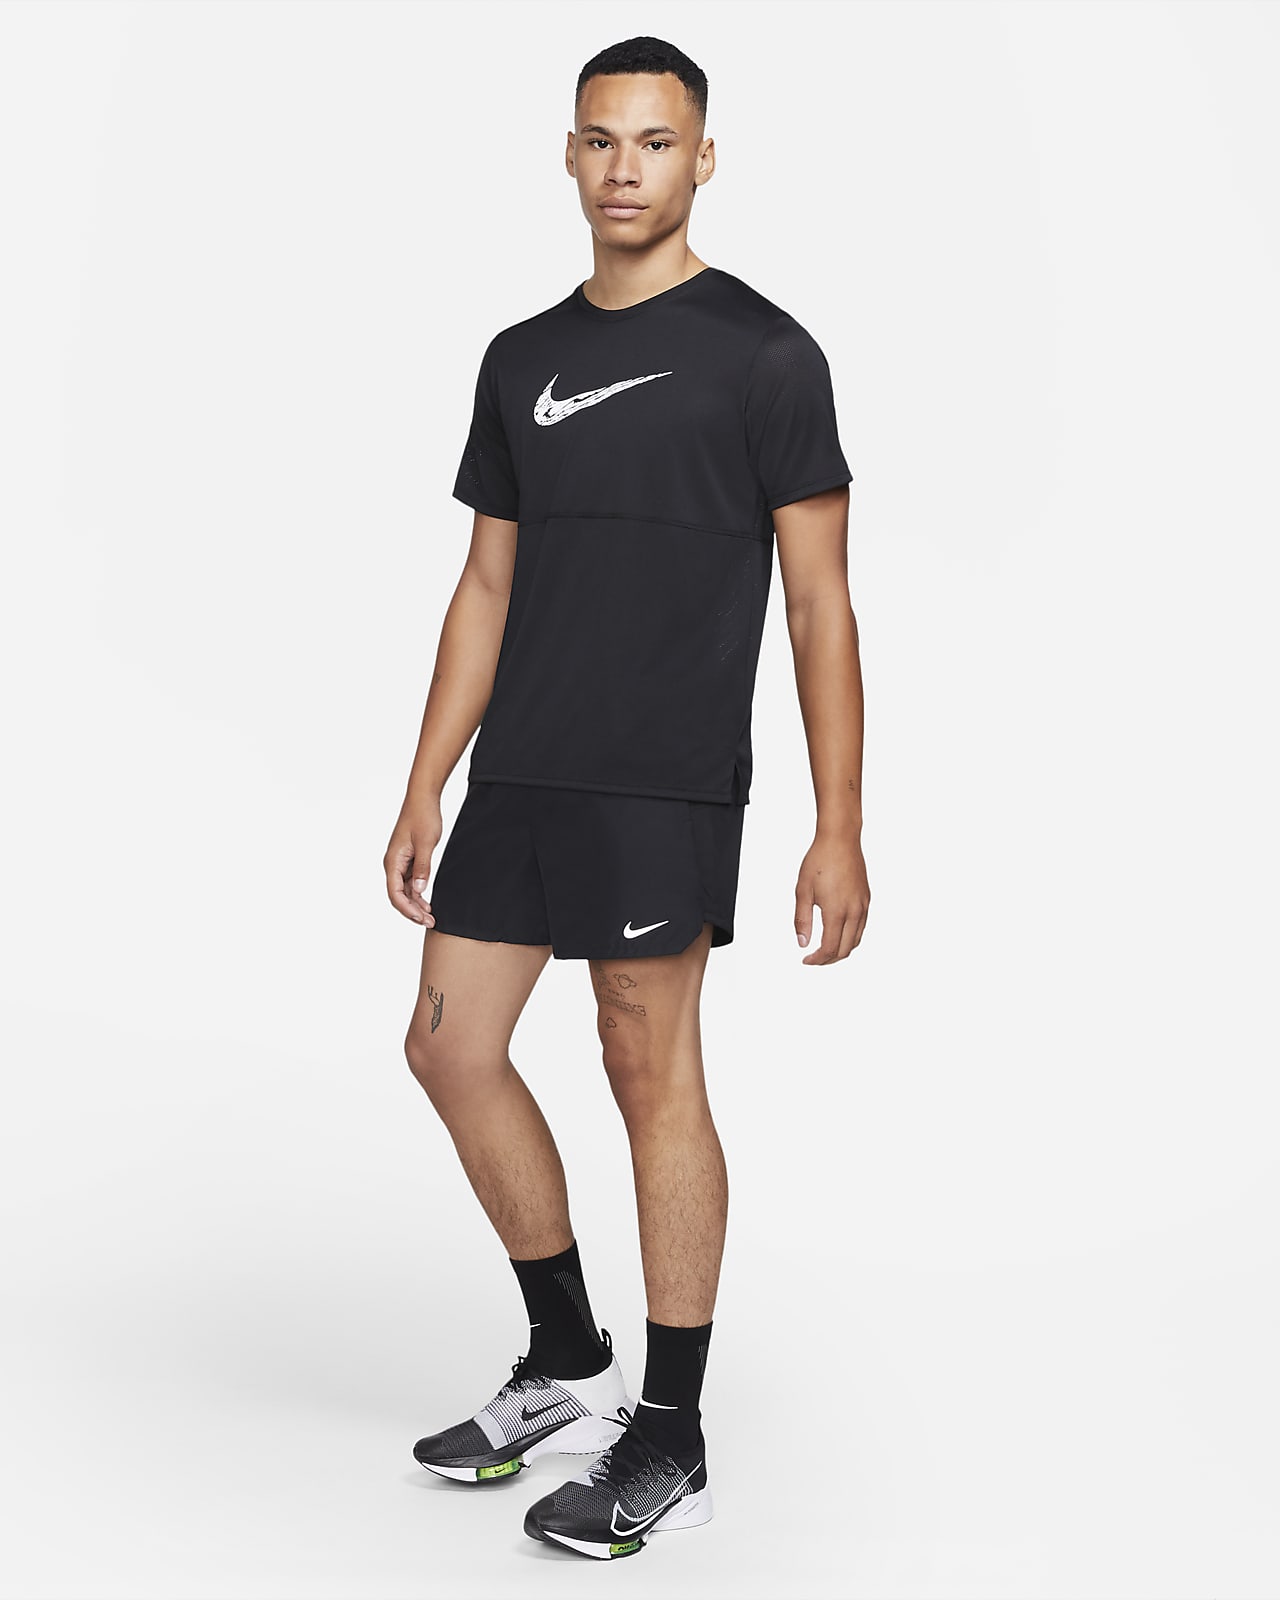 Bolsa de cintura de running Nike Challenger (grande, 1 L). Nike PT